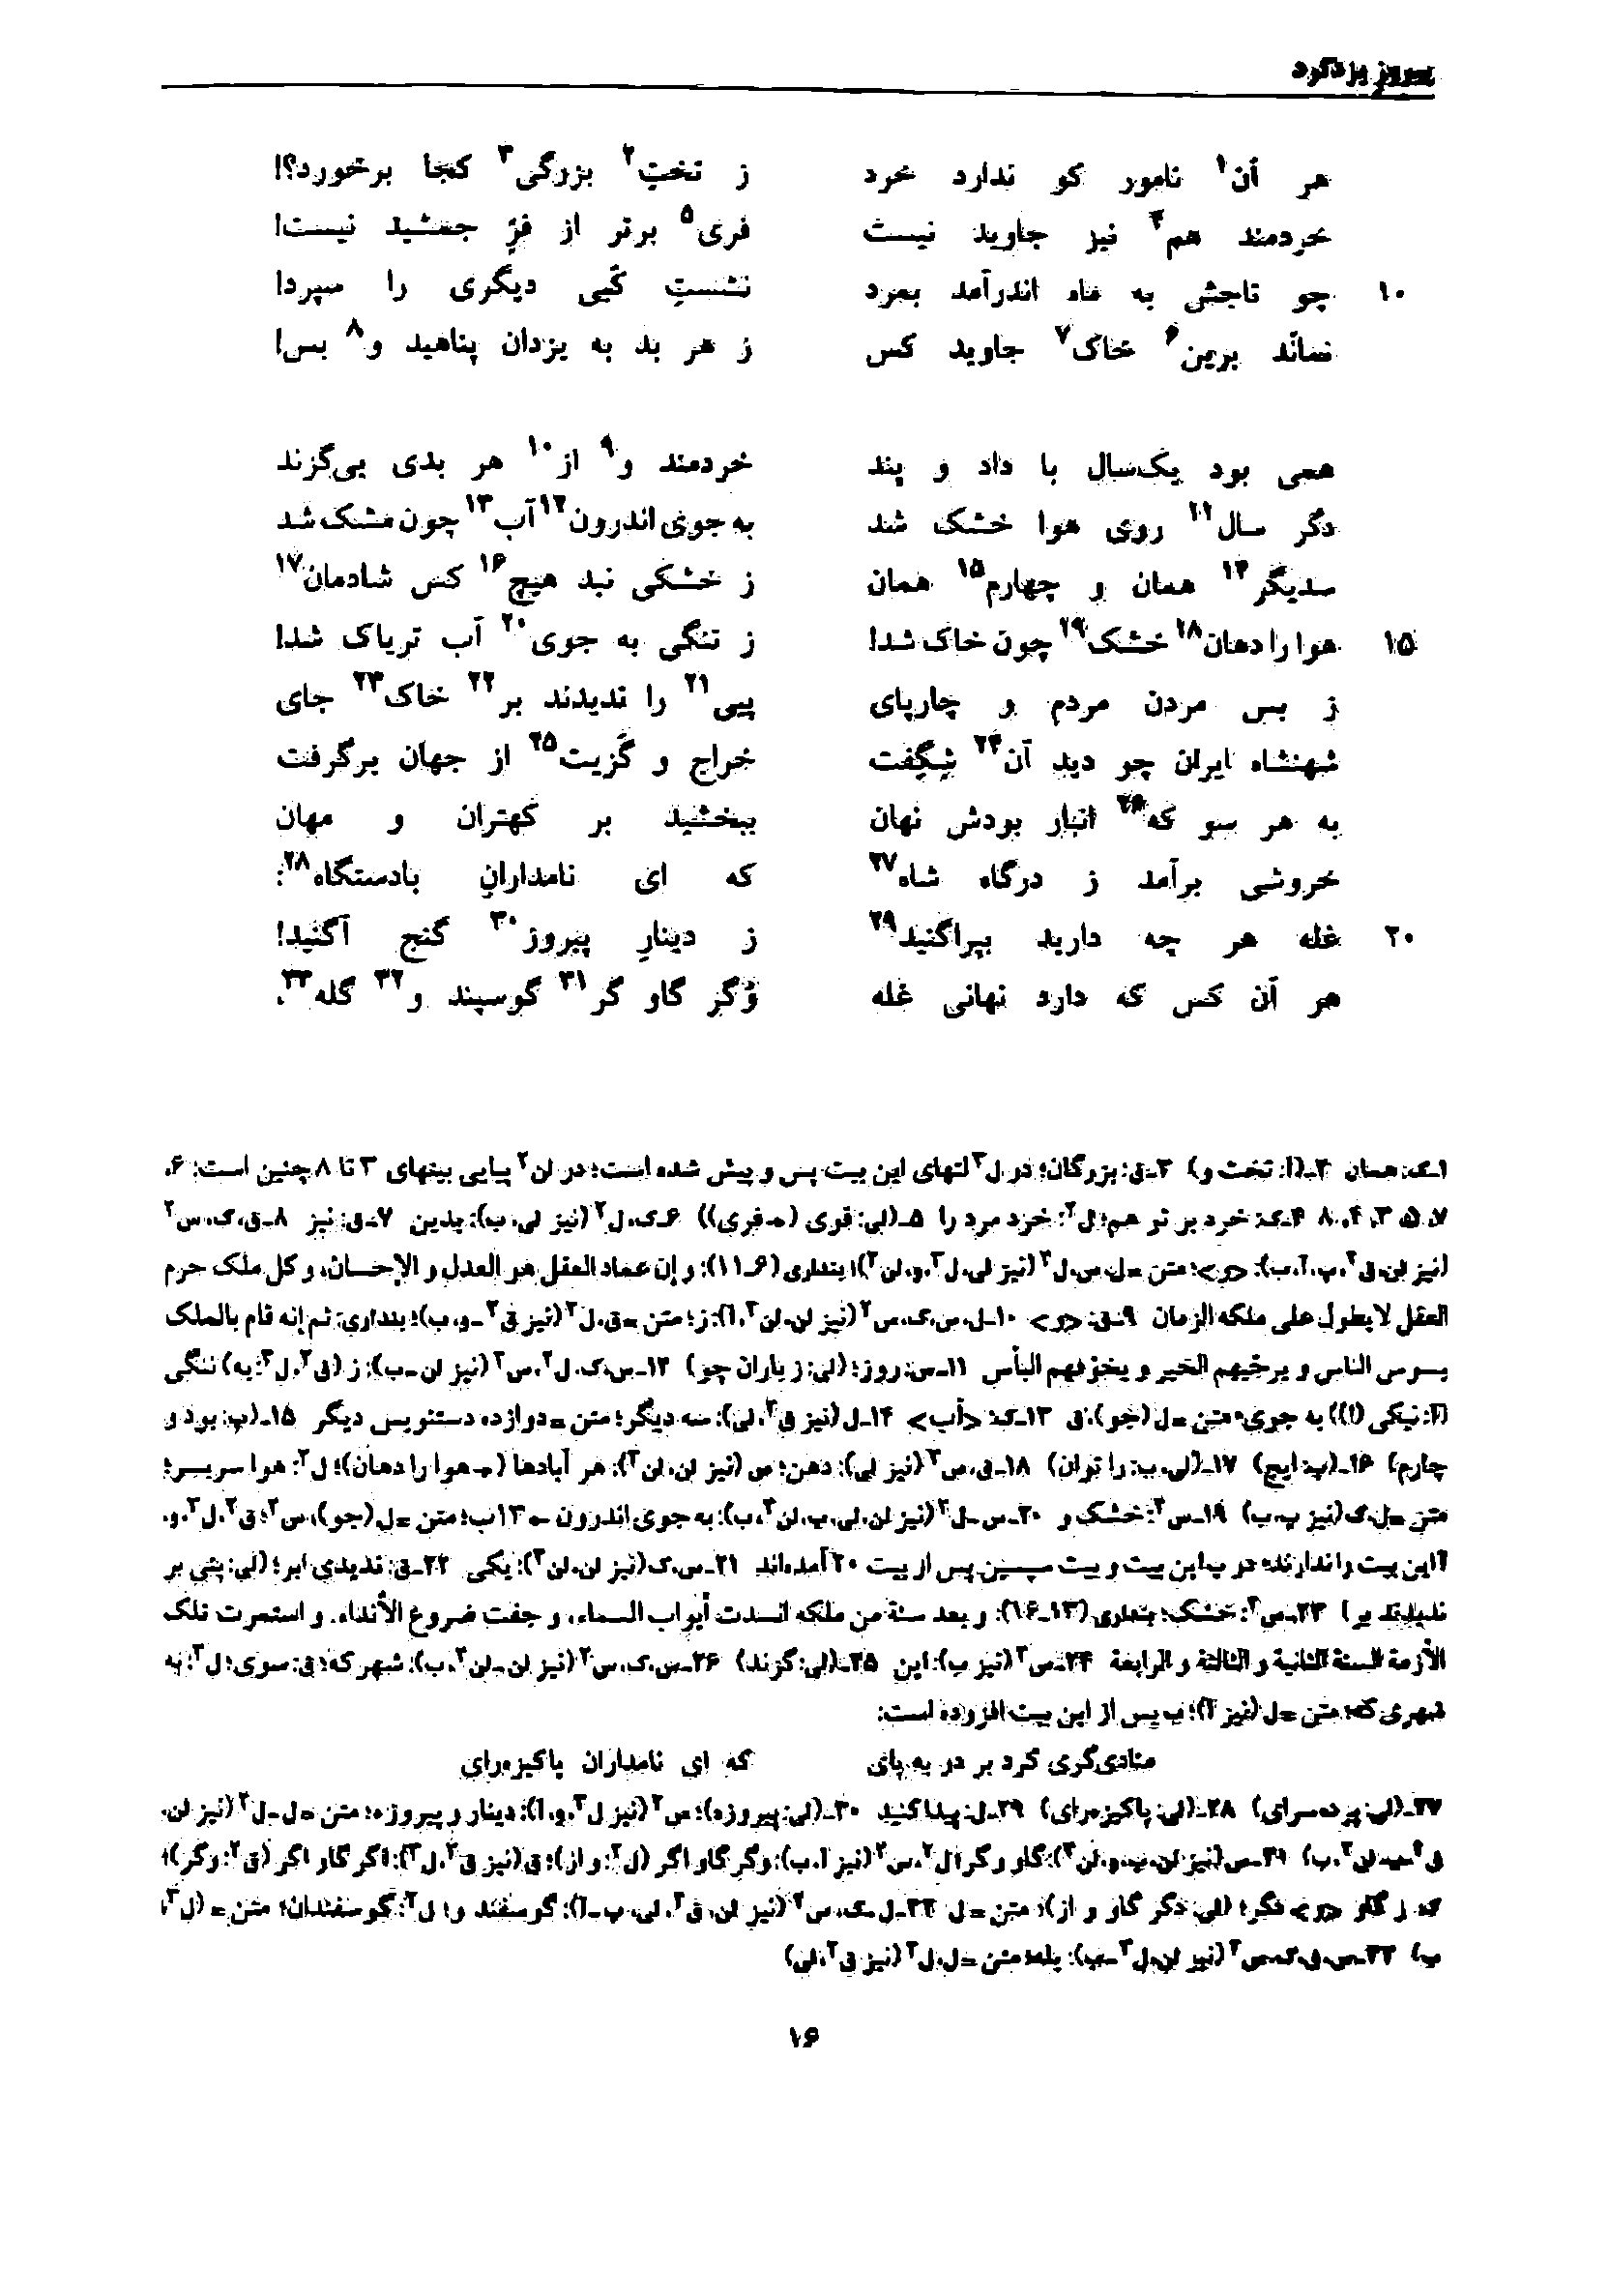 vol. 7, p. 16